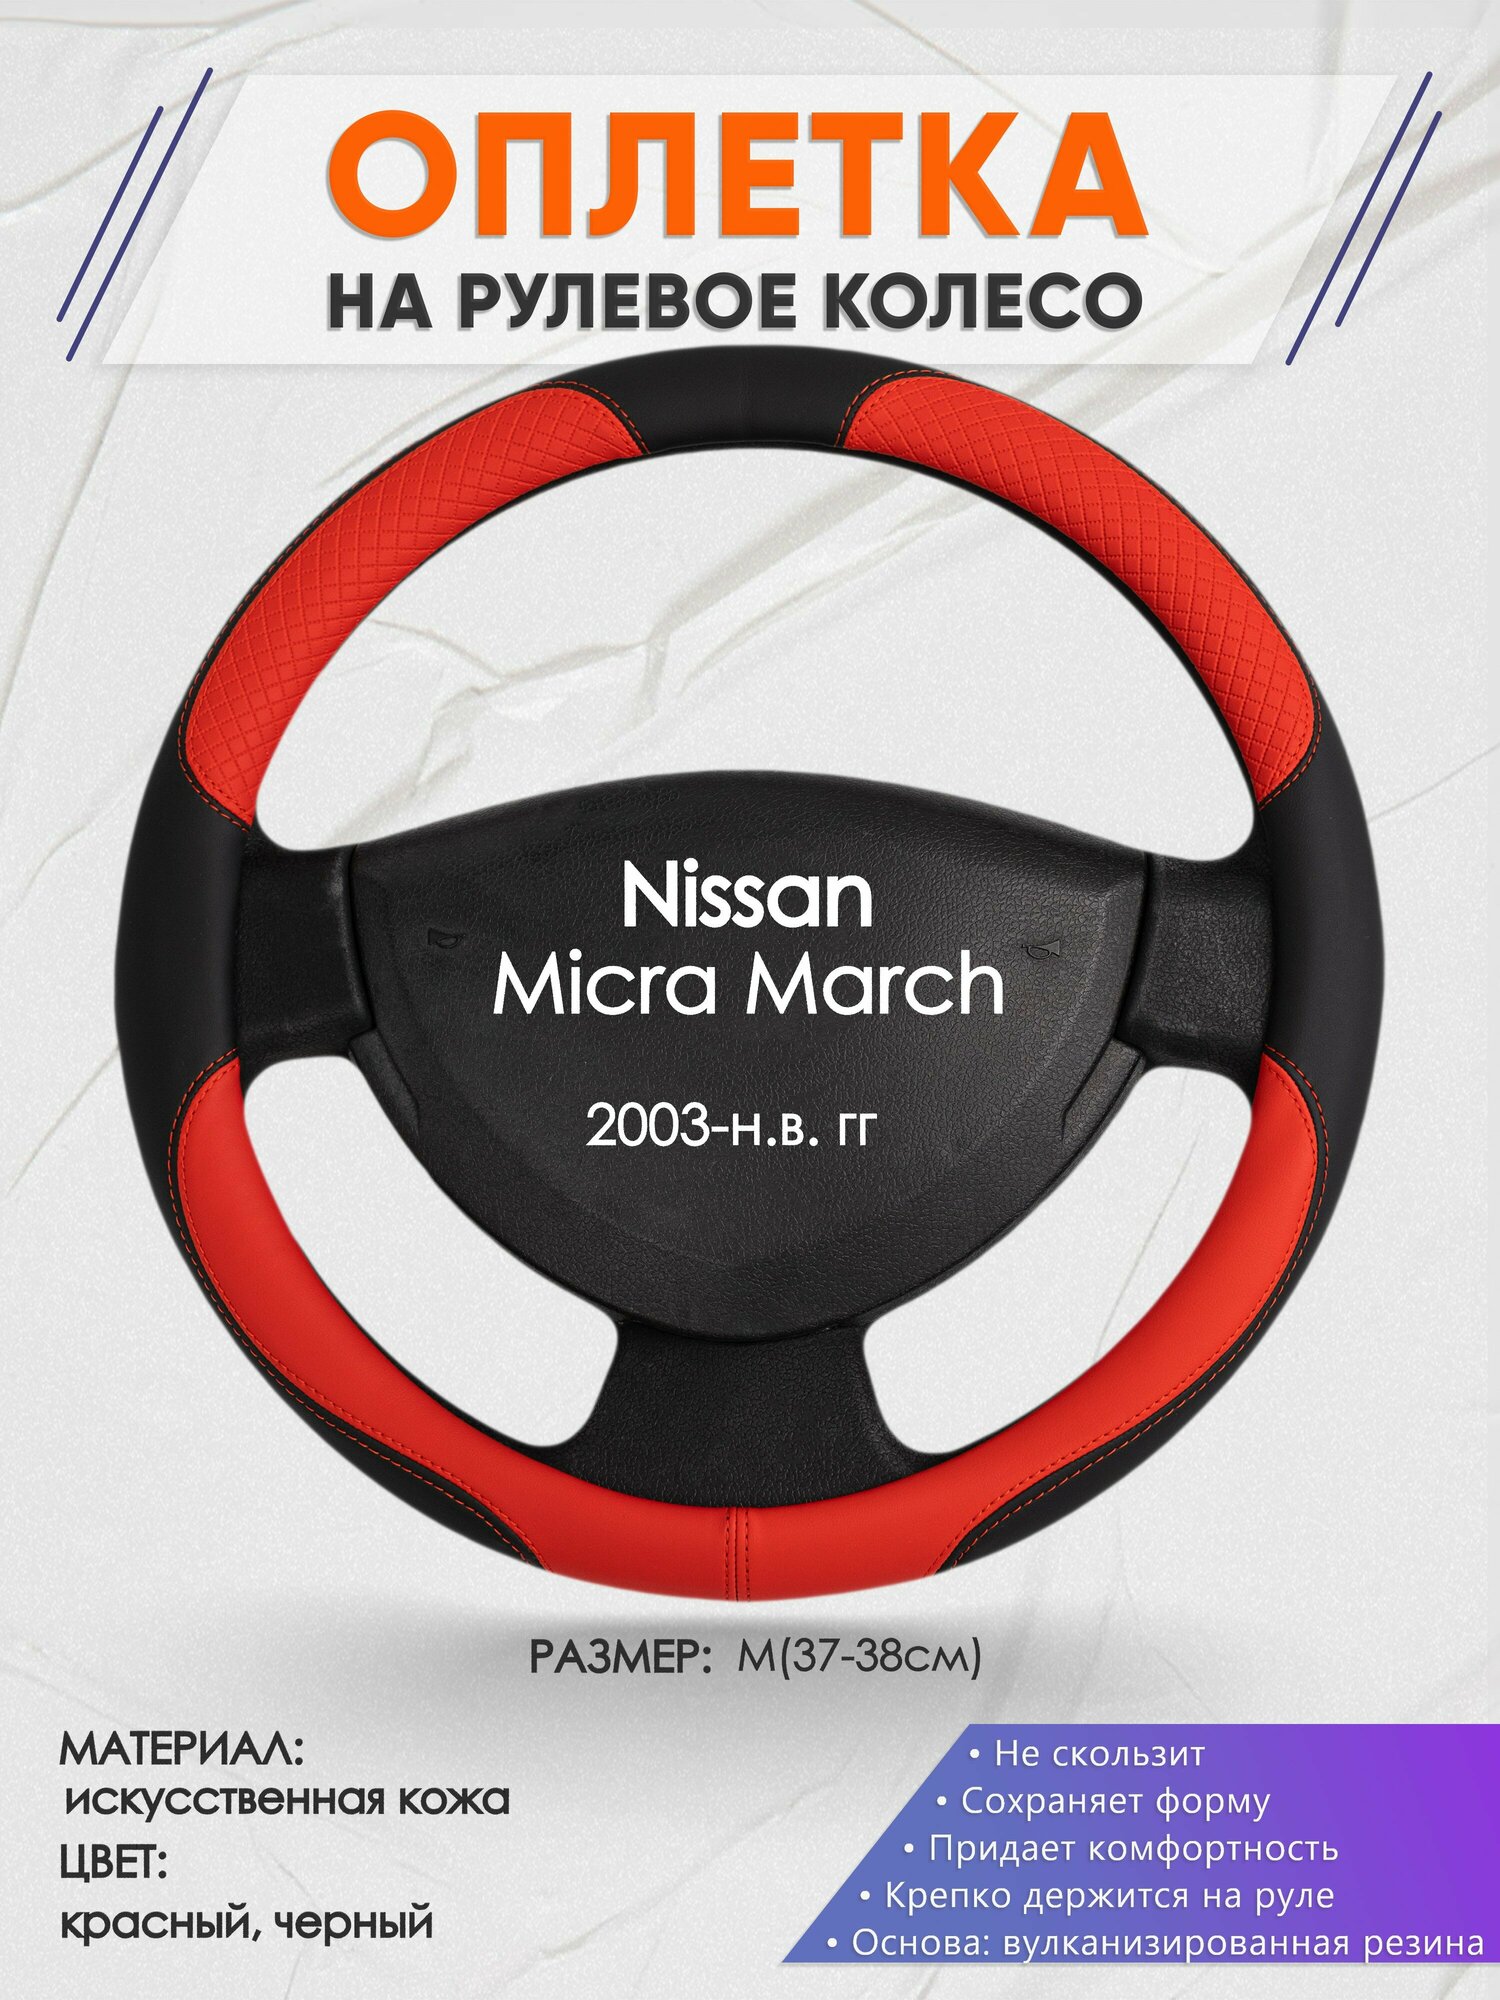 Оплетка на руль для Nissan Micra March(Ниссан Микра) 2003-н. в, M(37-38см), Искусственная кожа 05